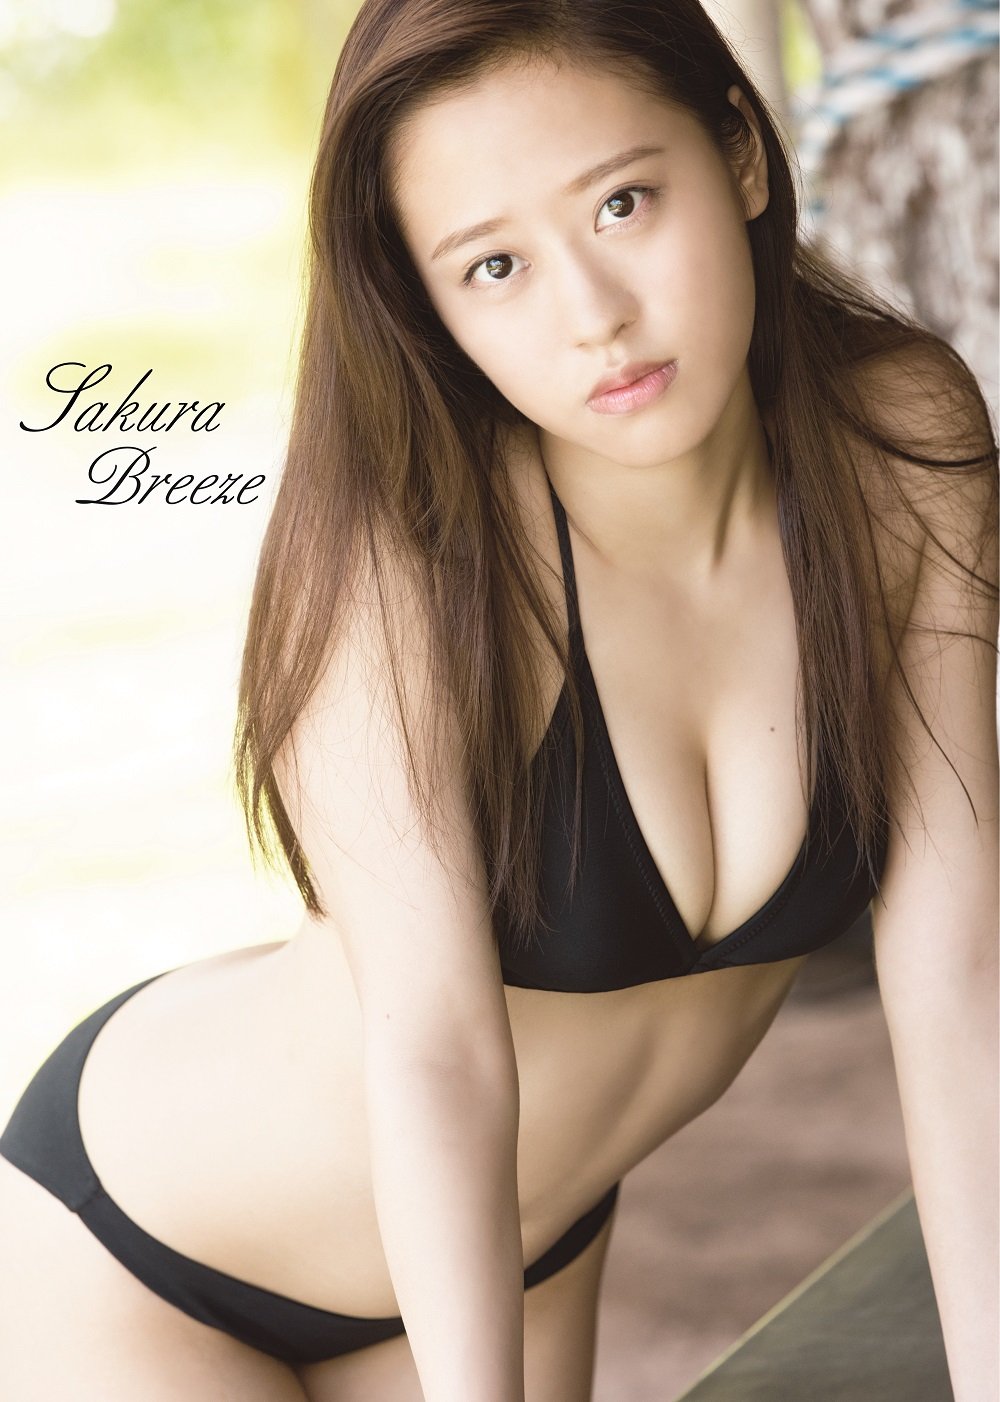 小田樱DVD写真集《Sakura Breeze》完整版[140M]清晰度：1724kbps / 大小：140M / 时长：11MIN-猩猩智库 - 提供高质量日系写真